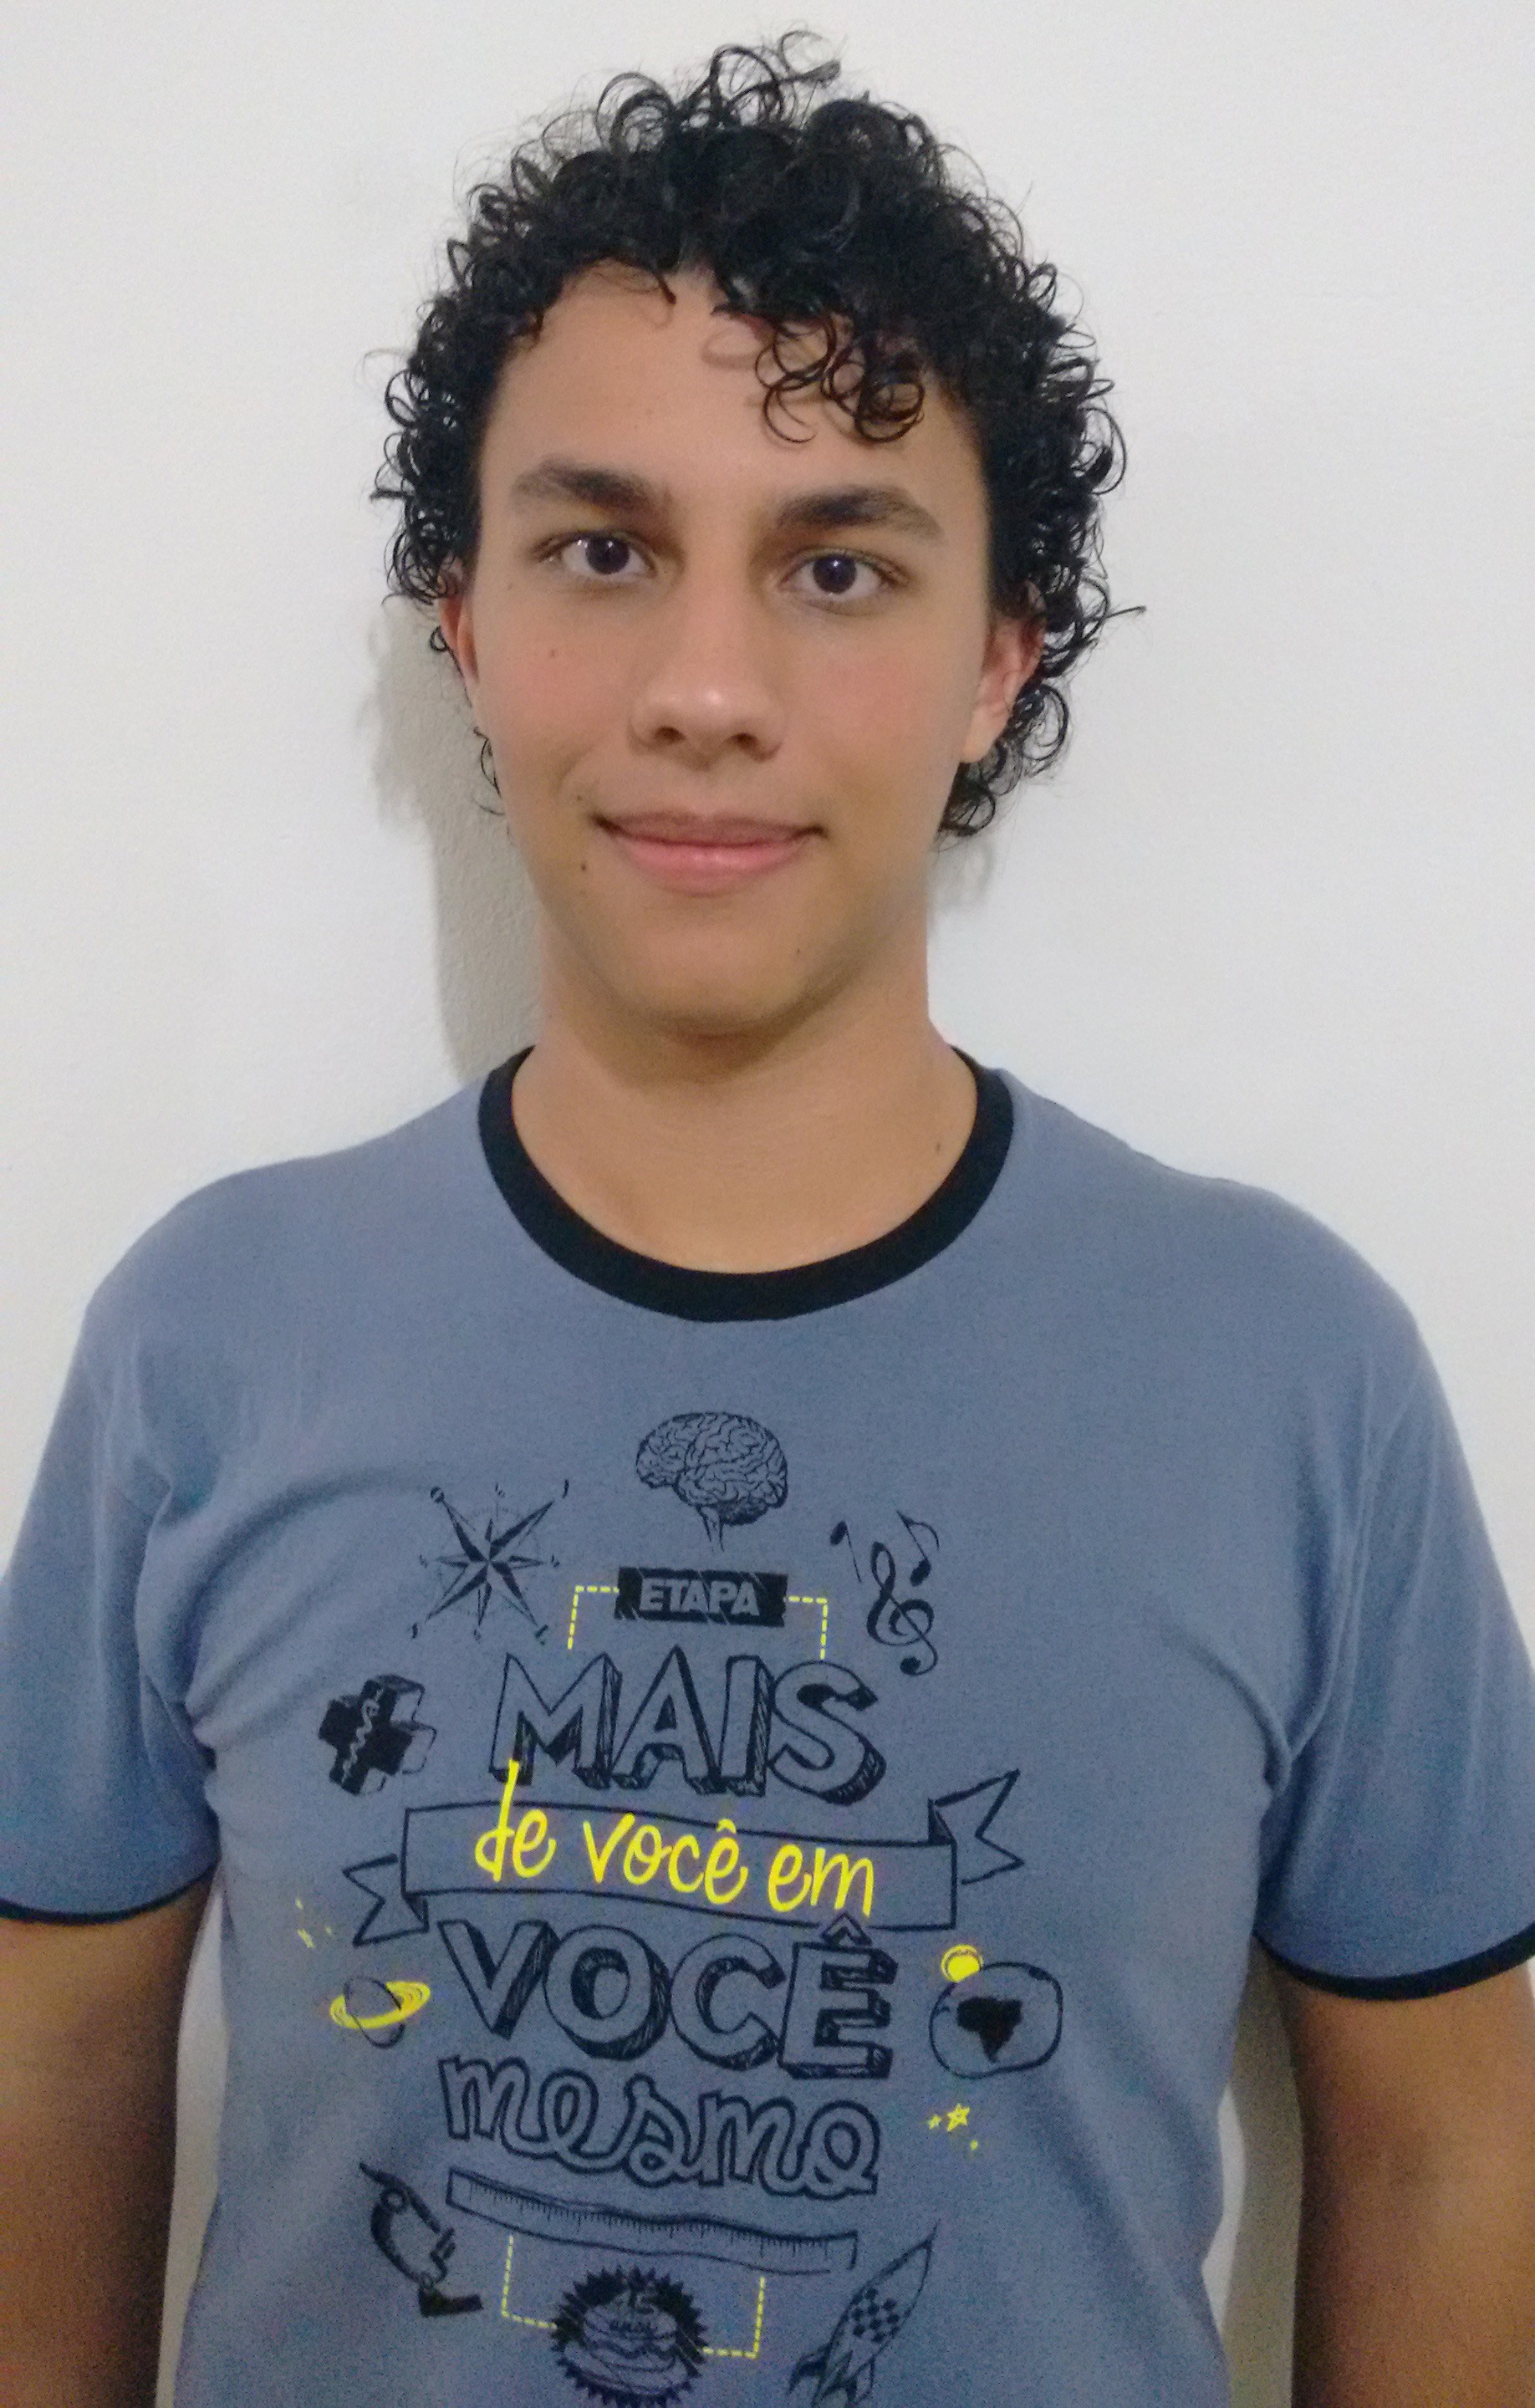 Henrique Barbosa de Oliveira - tem 18 anos, é de Valinhos (SP) e cursa o 2º ano do ensino médio no colégio Etapa (Foto: divulgação)